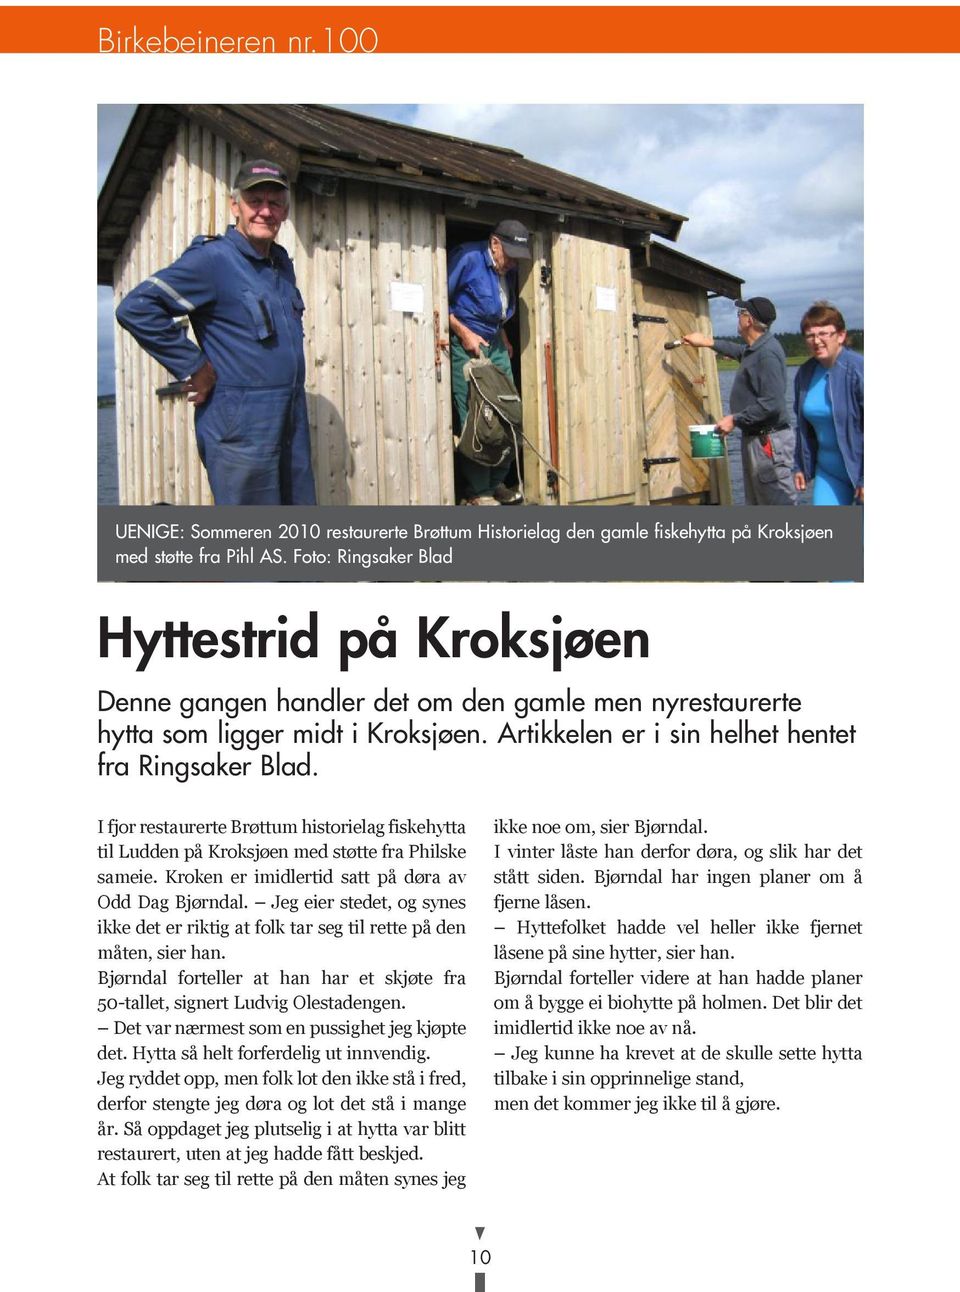 I fjor restaurerte Brøttum historielag fiskehytta til Ludden på Kroksjøen med støtte fra Philske sameie. Kroken er imidlertid satt på døra av Odd Dag Bjørndal.